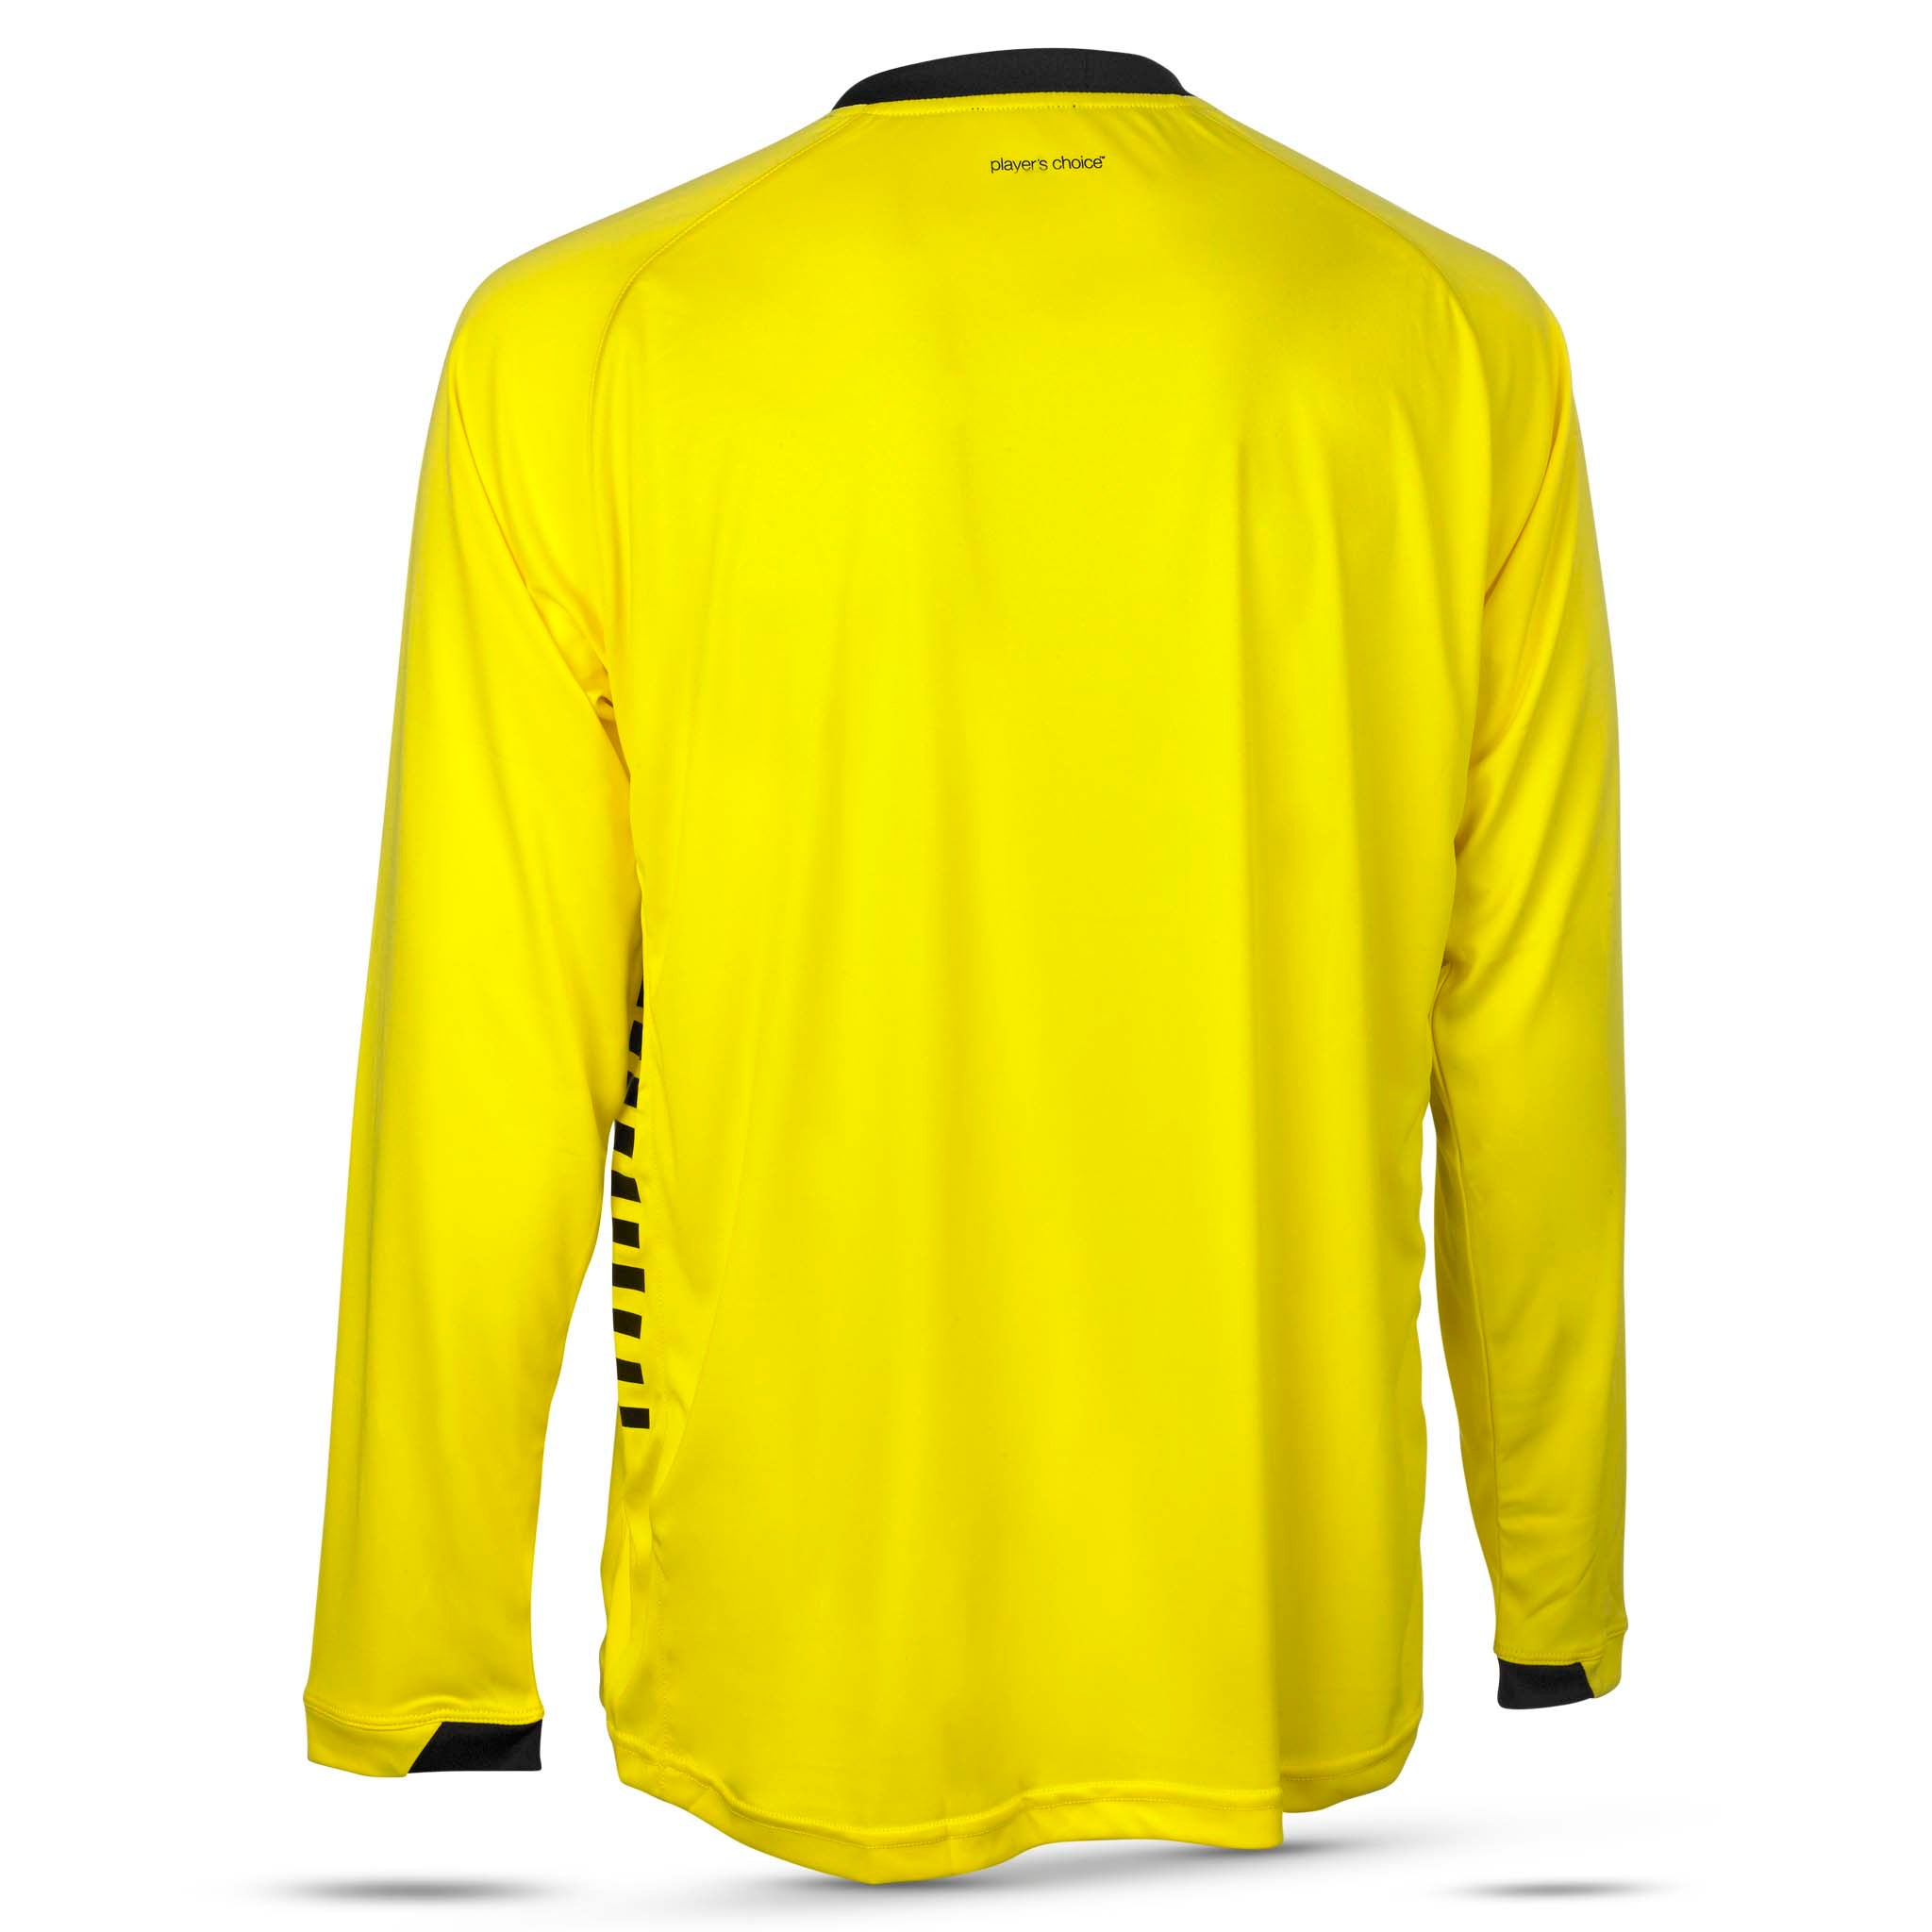 Spain Langærmet spillertrøje #farve_gul/sort